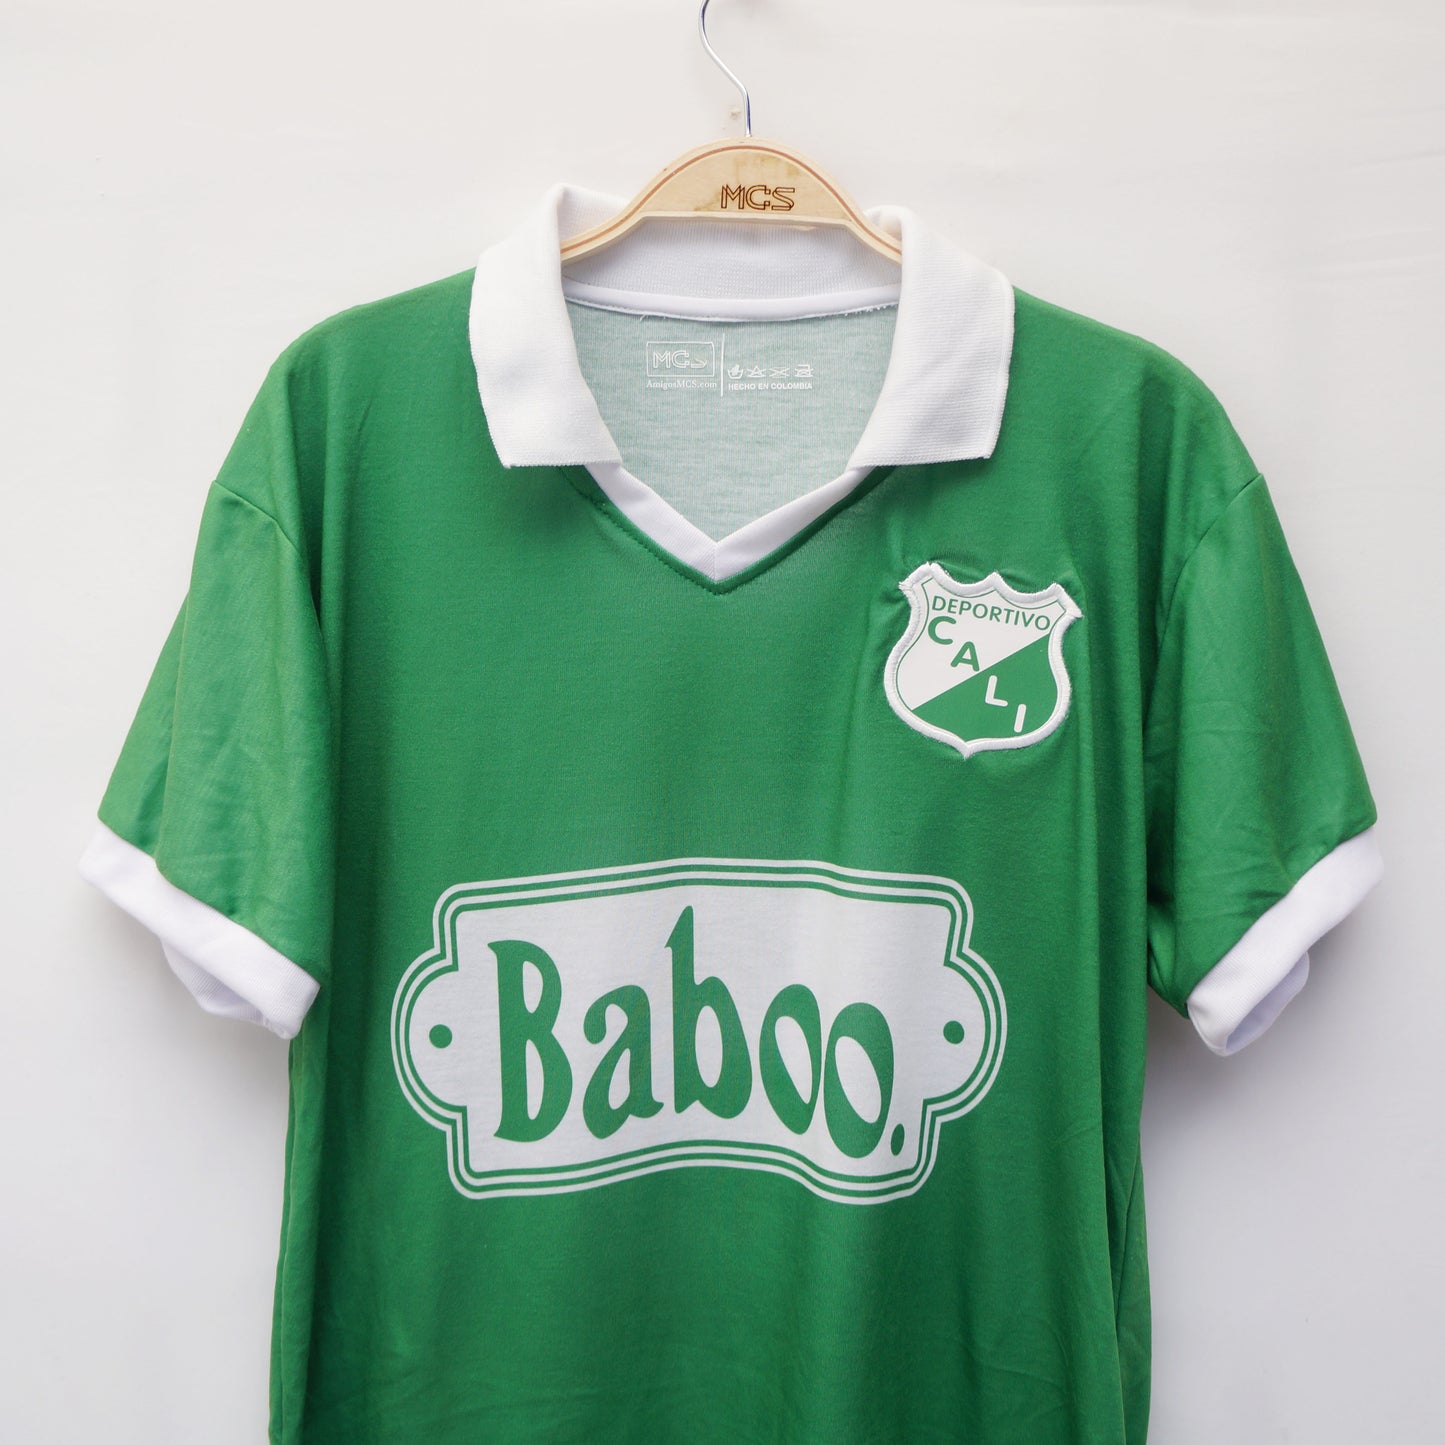 Camiseta Deportivo Cali Baboo